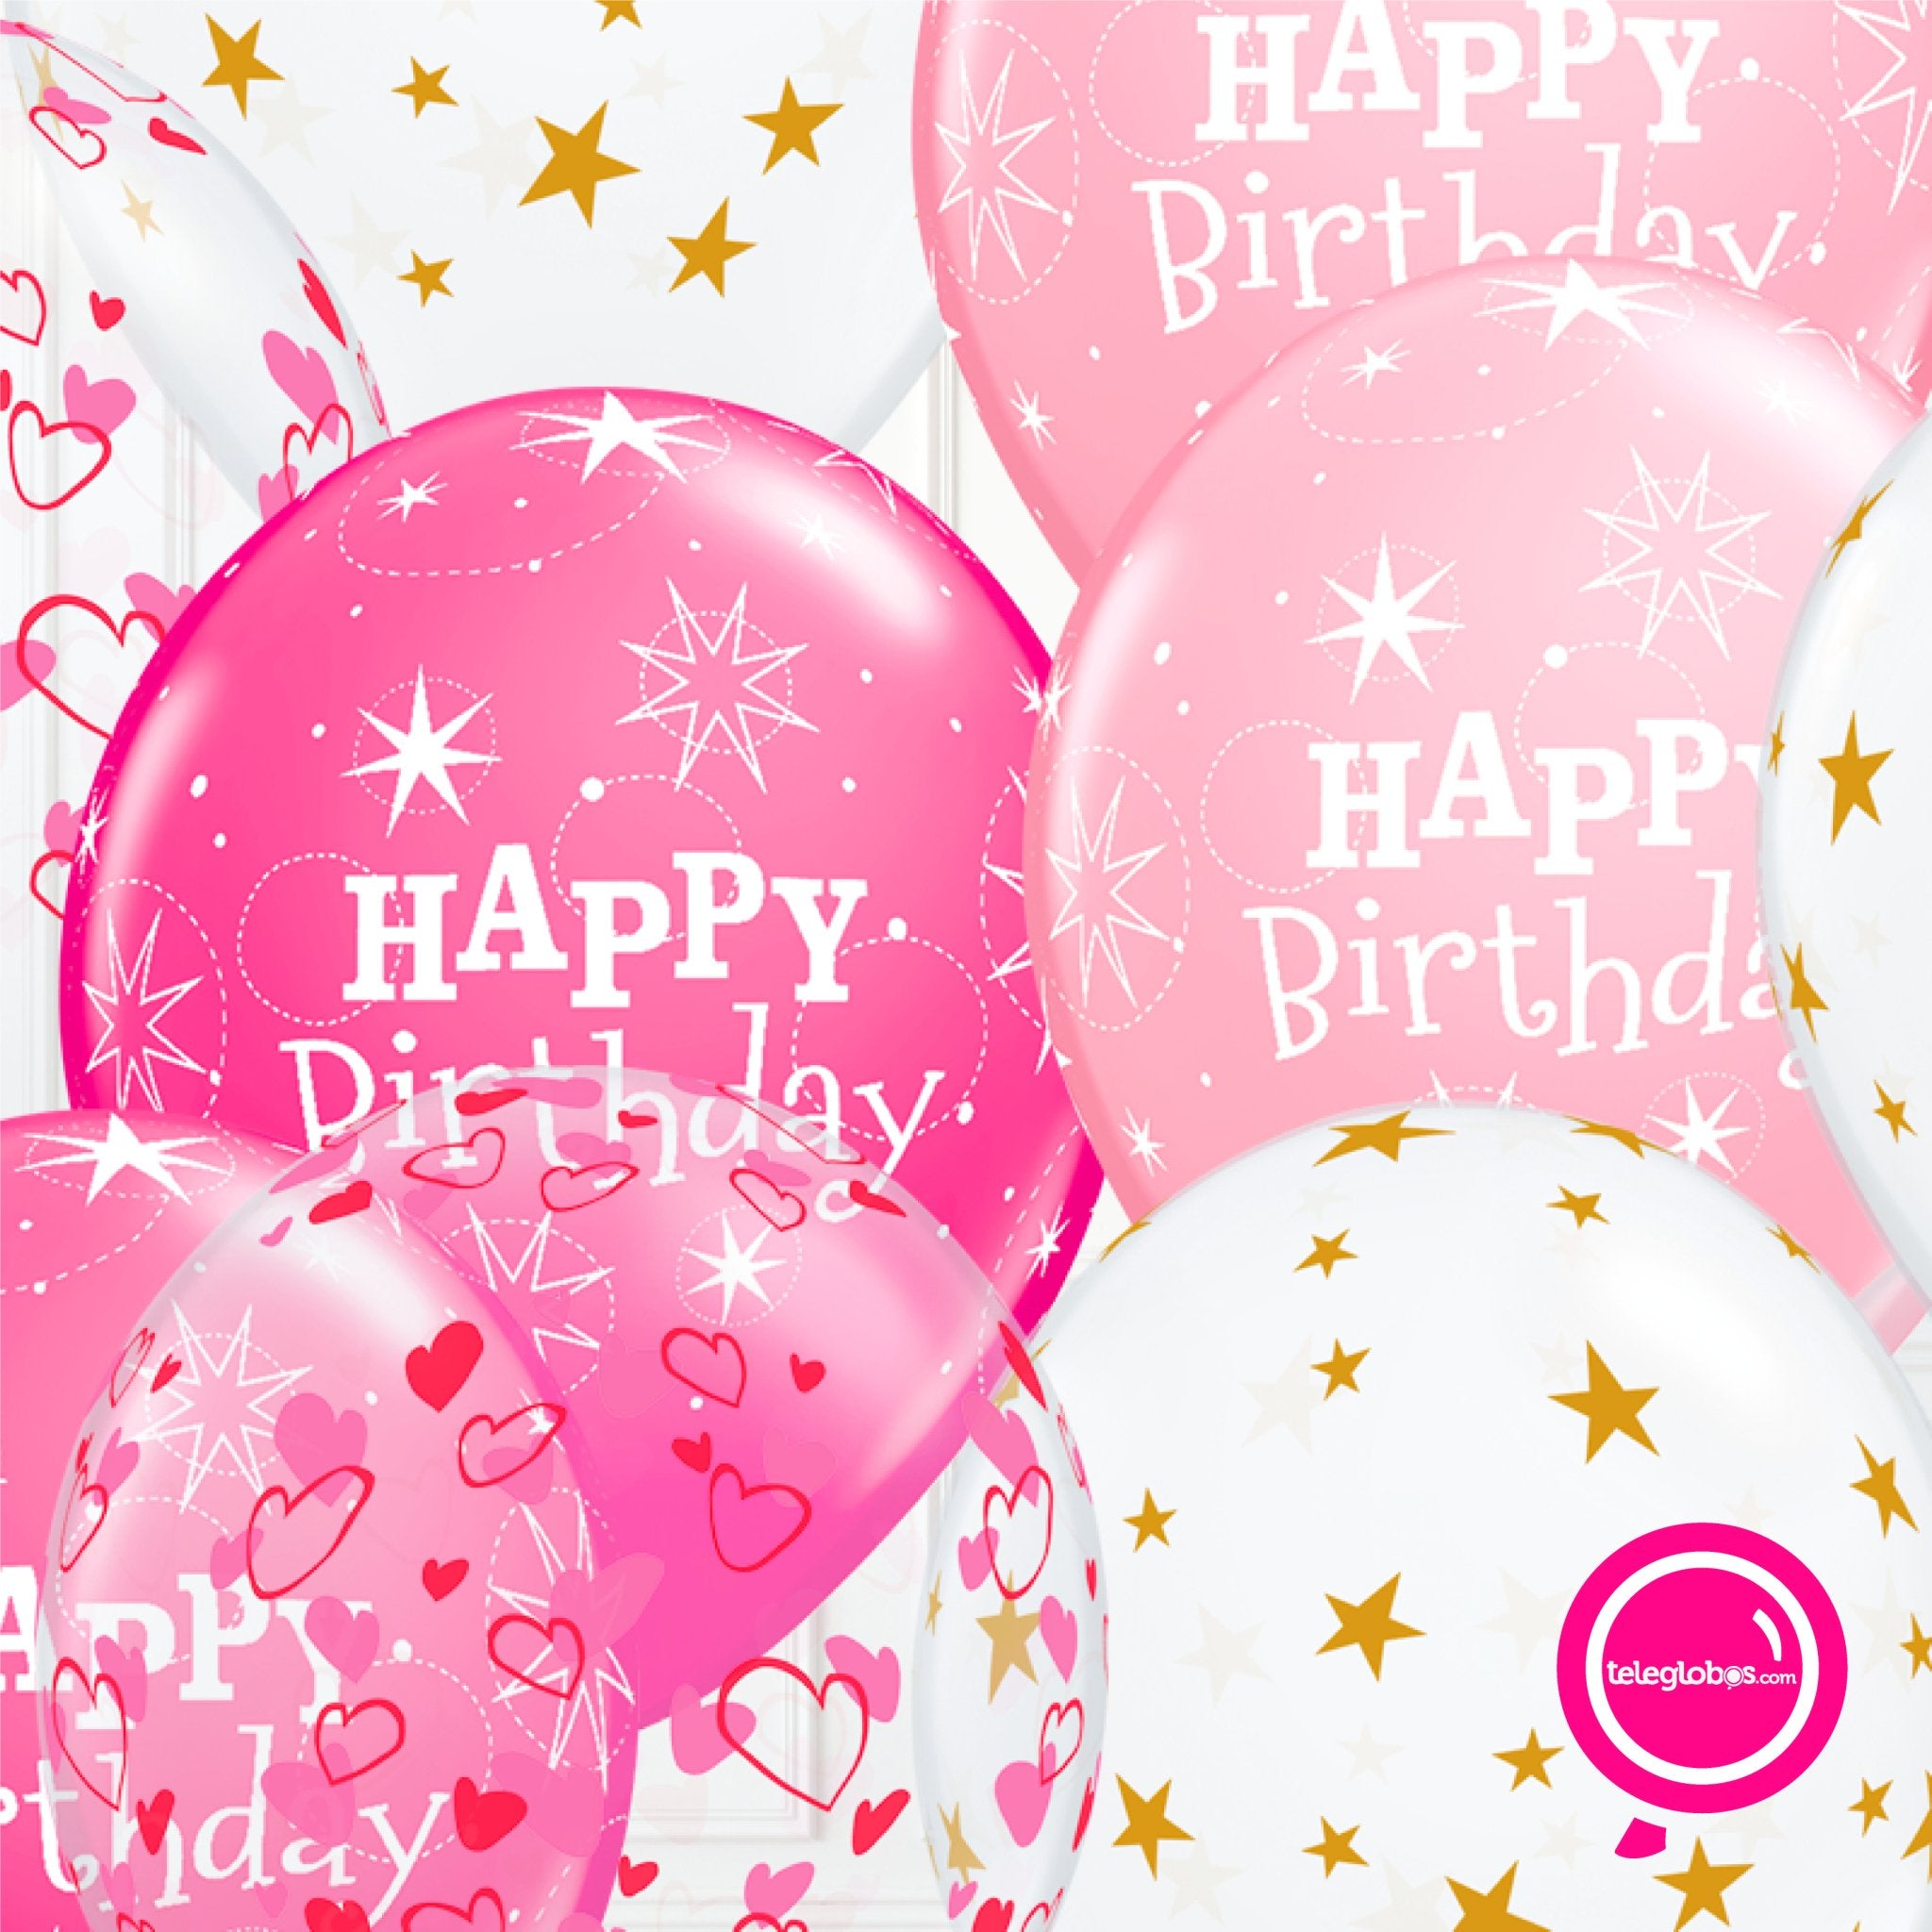 14 globos inflados con helio -Happy Birthday/Corazones/Estrellas- Bio* -RAC027- | Globos y Regalos Teleglobos.com.mx.